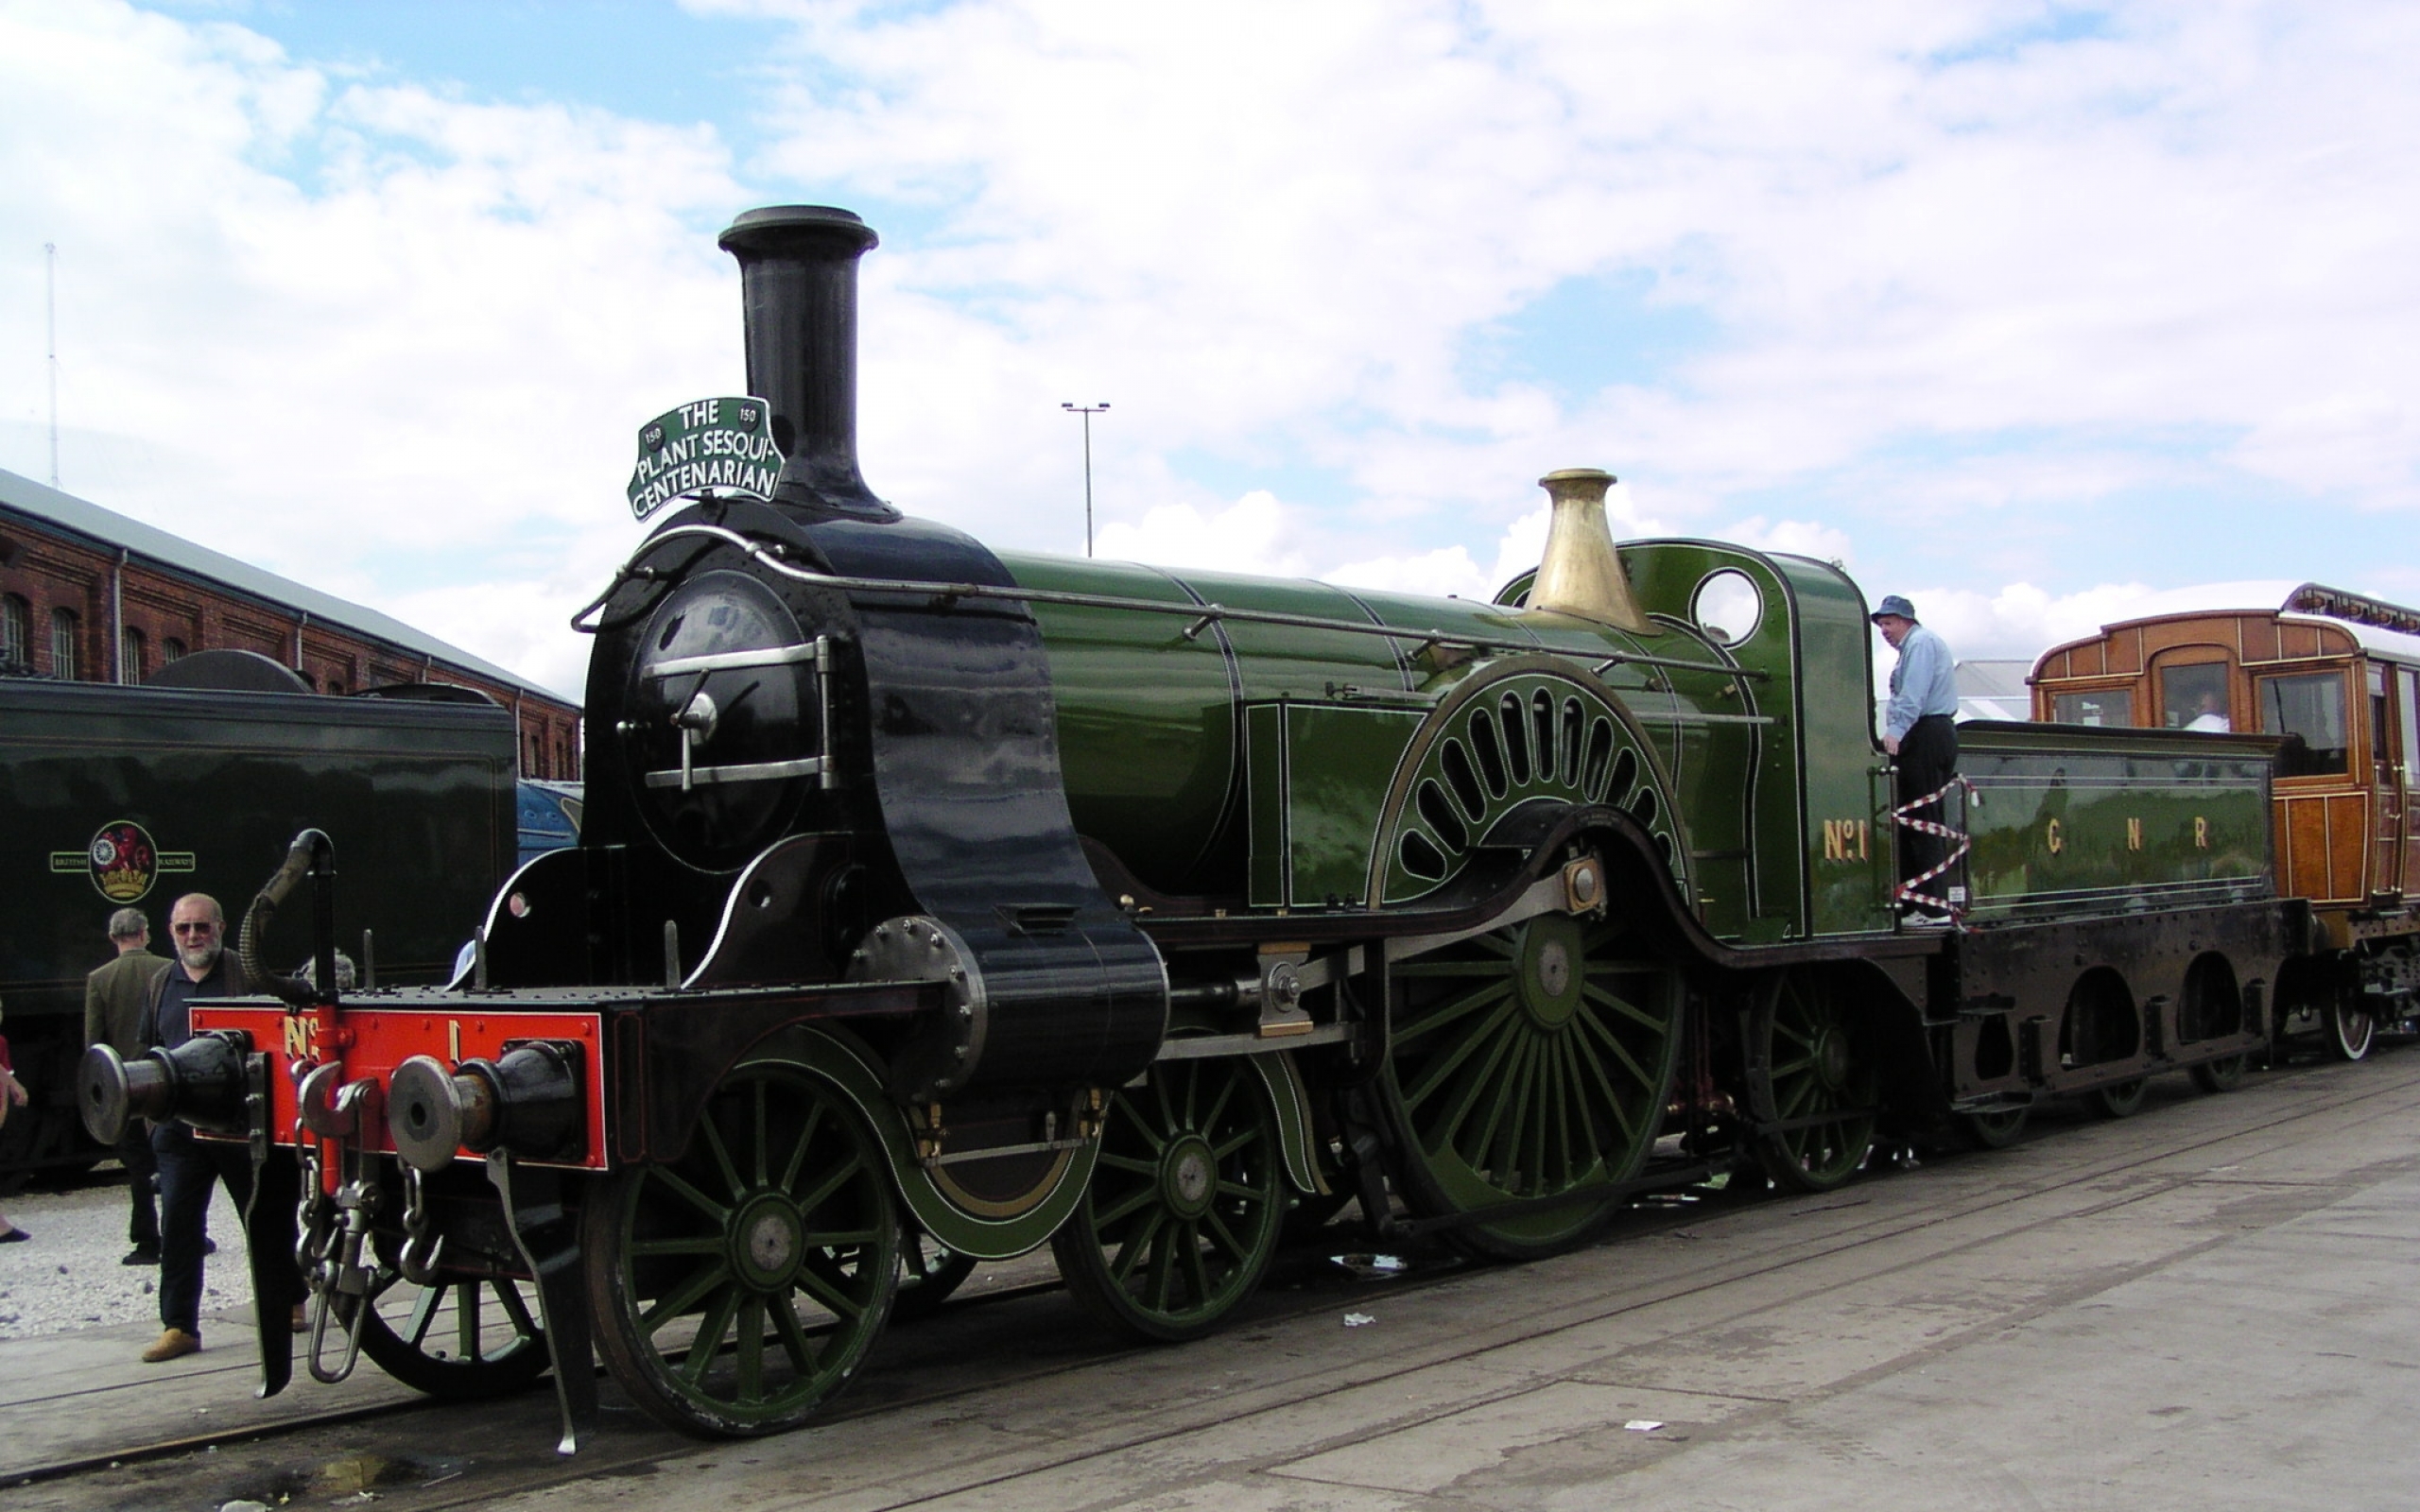 1 паровоз в мире. Паровоз GNR 4 2 2. Первый паровой Локомотив Великобритания. GNR Stirling 4-2-2. Паровозы Англии 19 века.